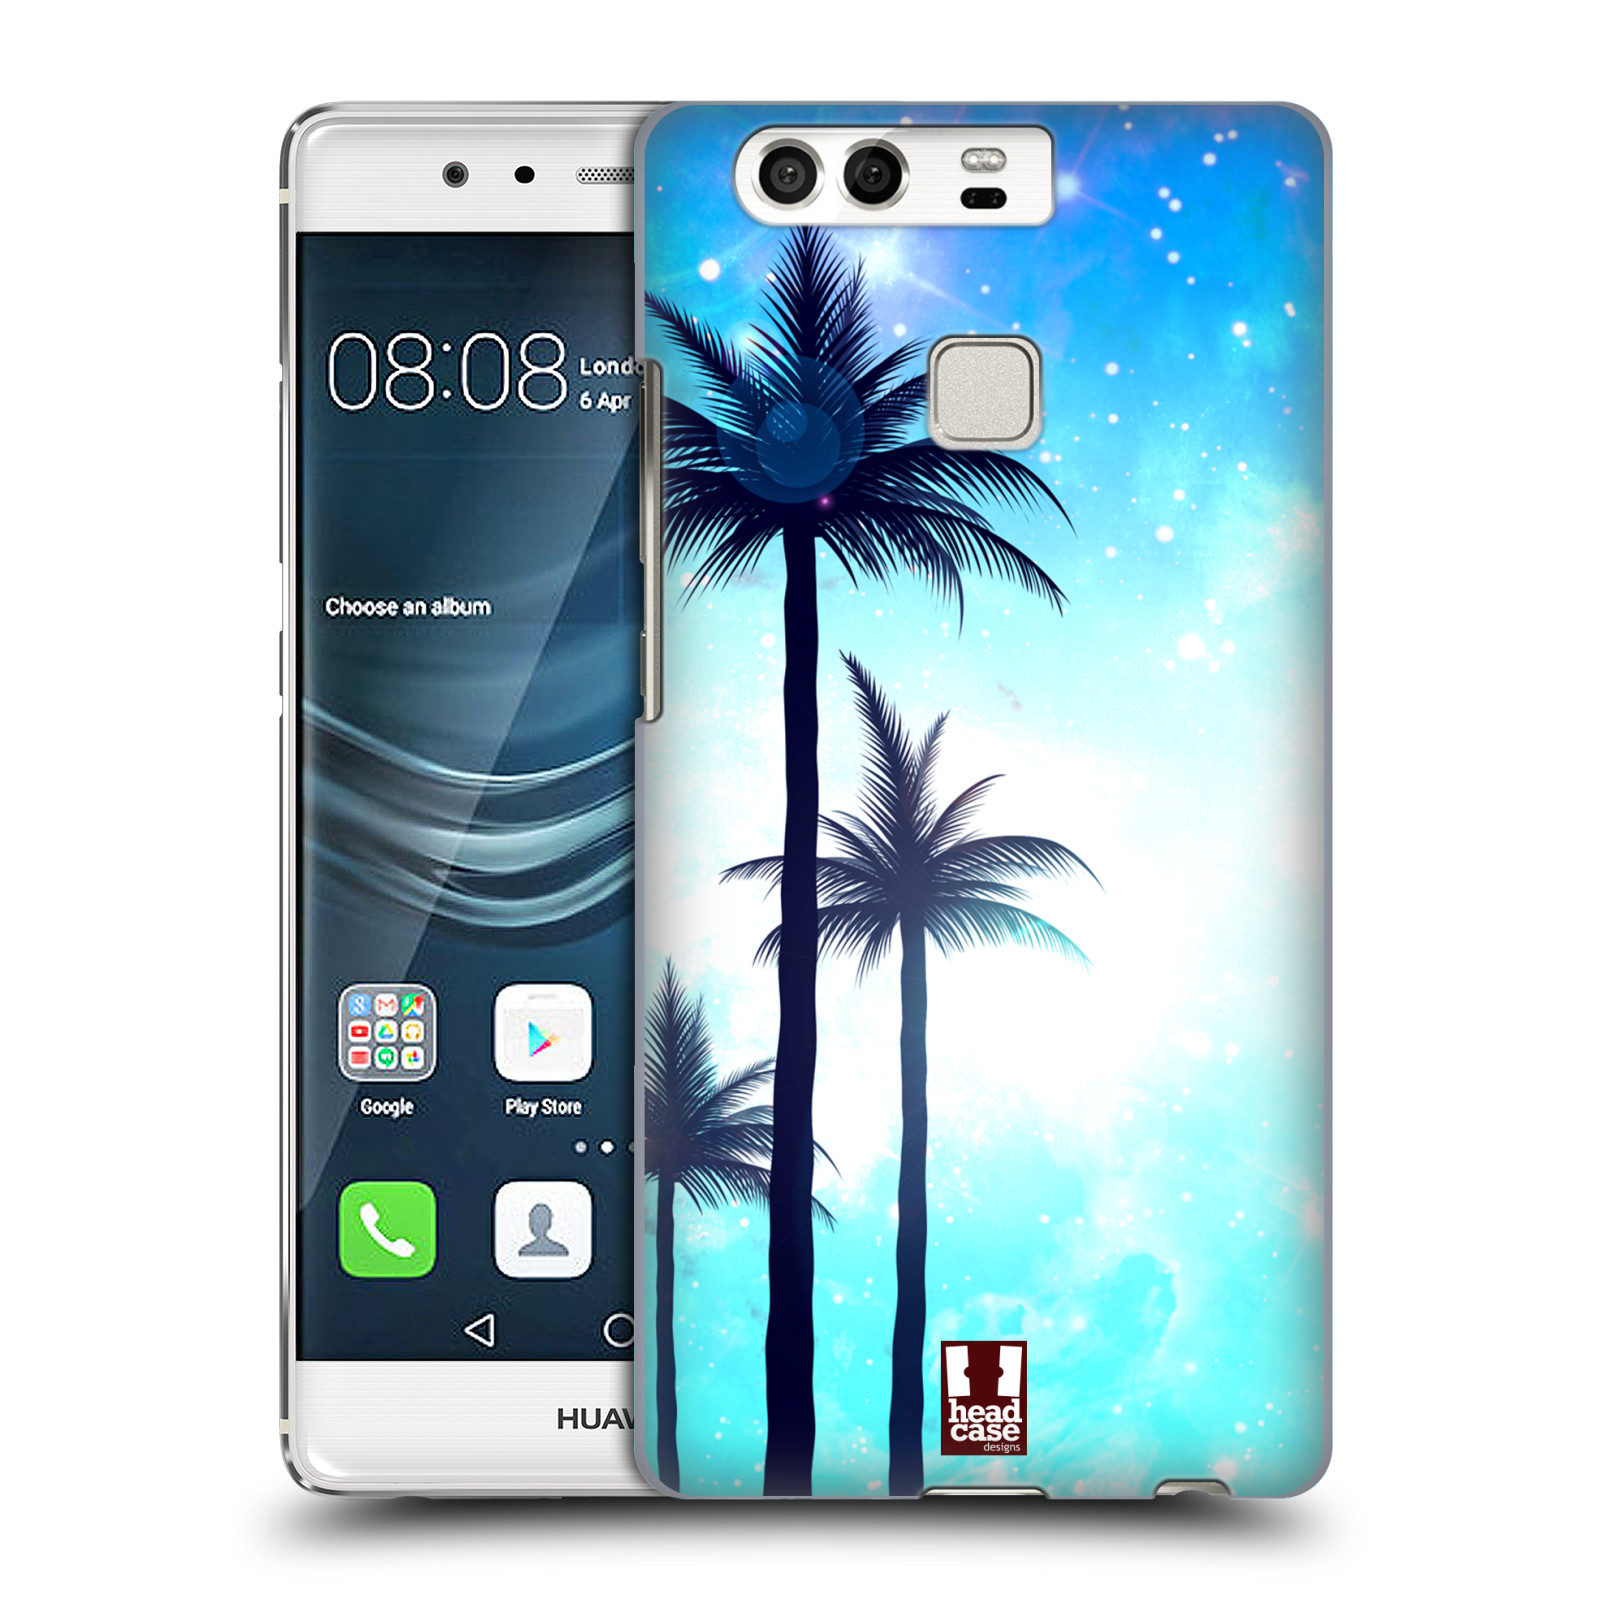 HEAD CASE plastový obal na mobil Huawei P9 / P9 DUAL SIM vzor Kreslený motiv silueta moře a palmy MODRÁ